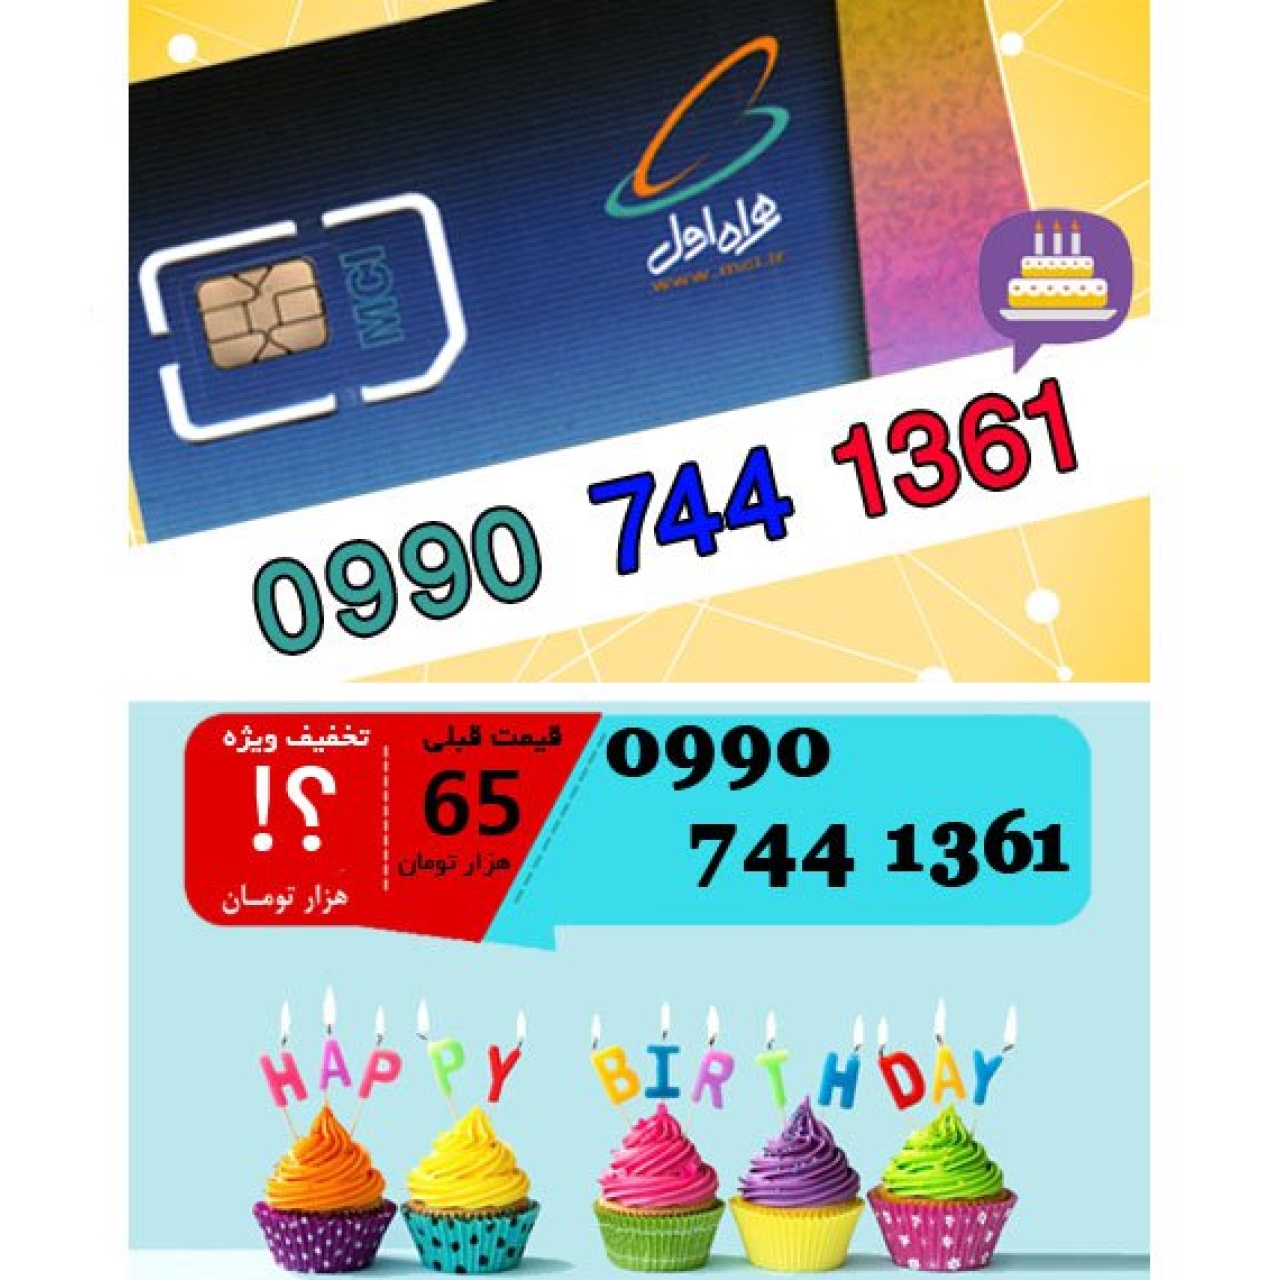 سیم کارت اعتباری همراه اول 09907441361 تاریخ تولد